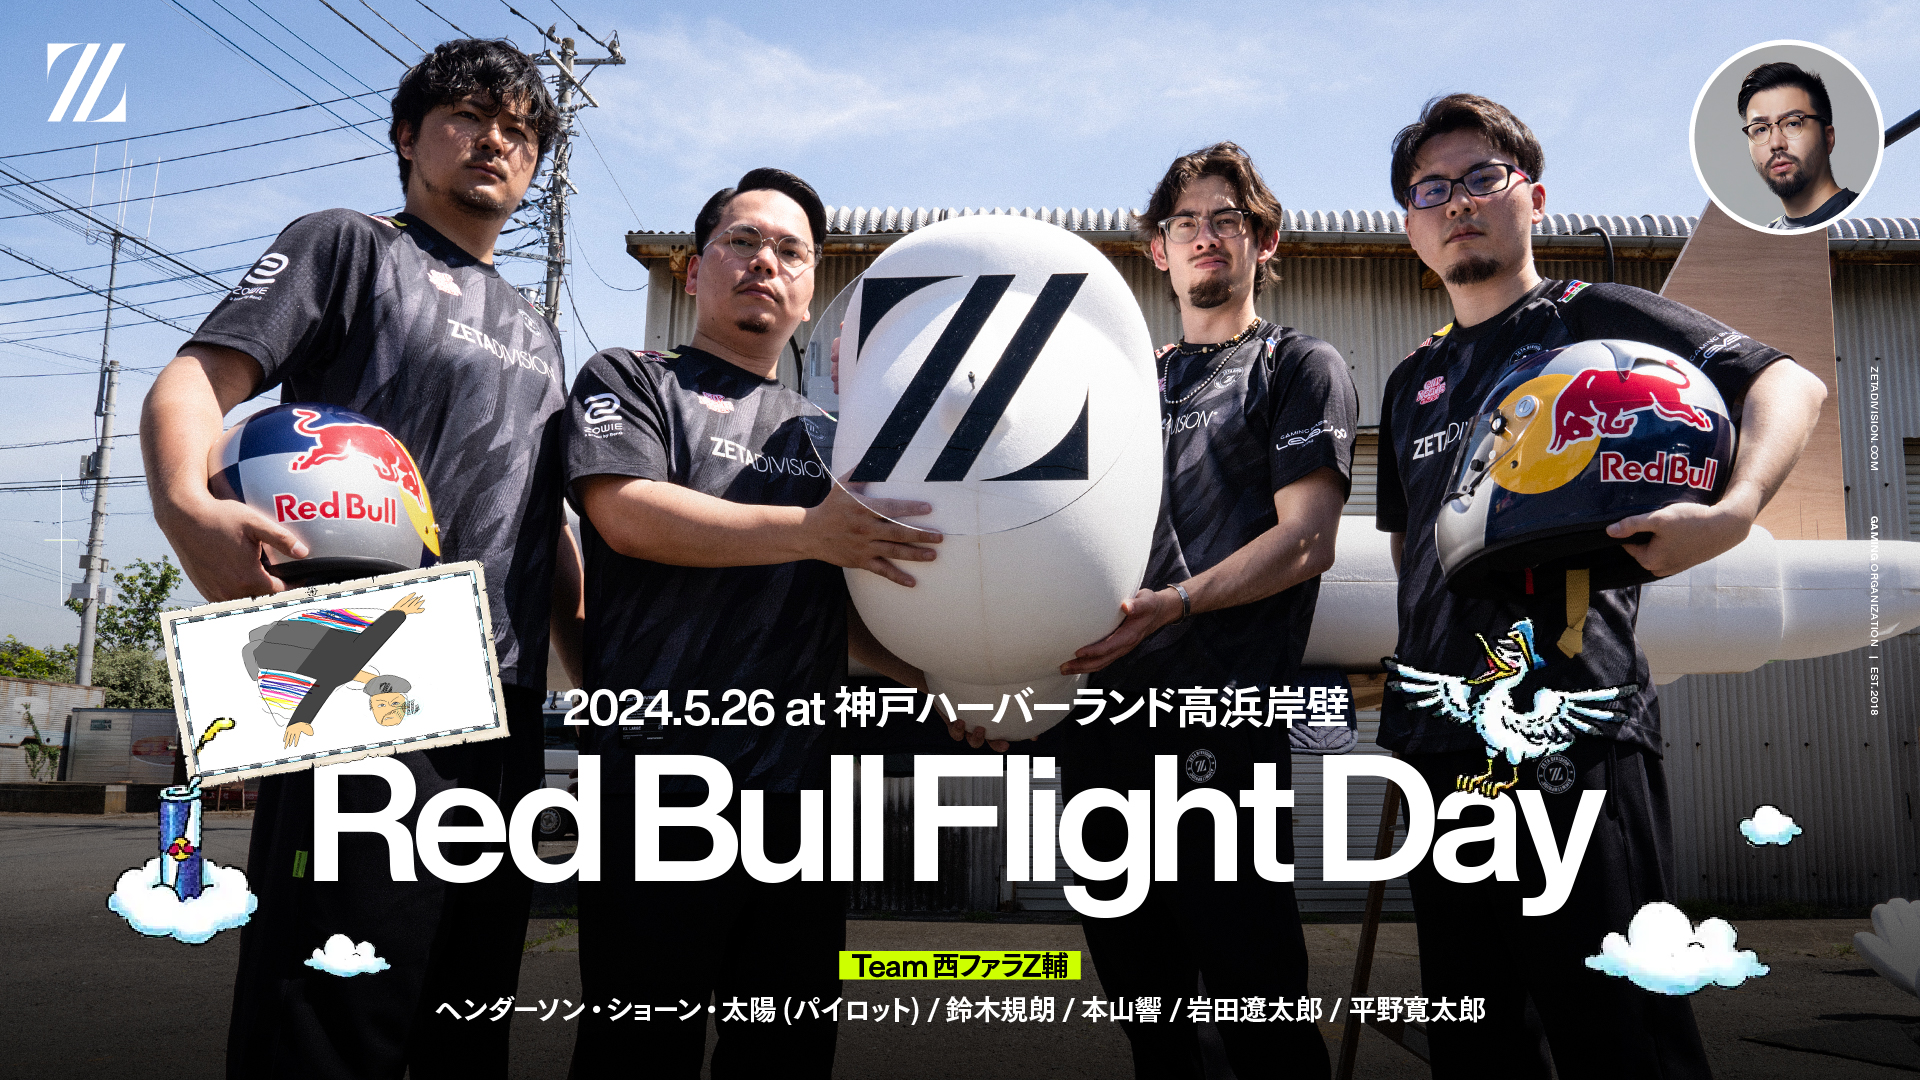 出演情報 – ta1yo, 鈴木ノリアキ, XQQが『Red Bull Flight Day 2024』に出演